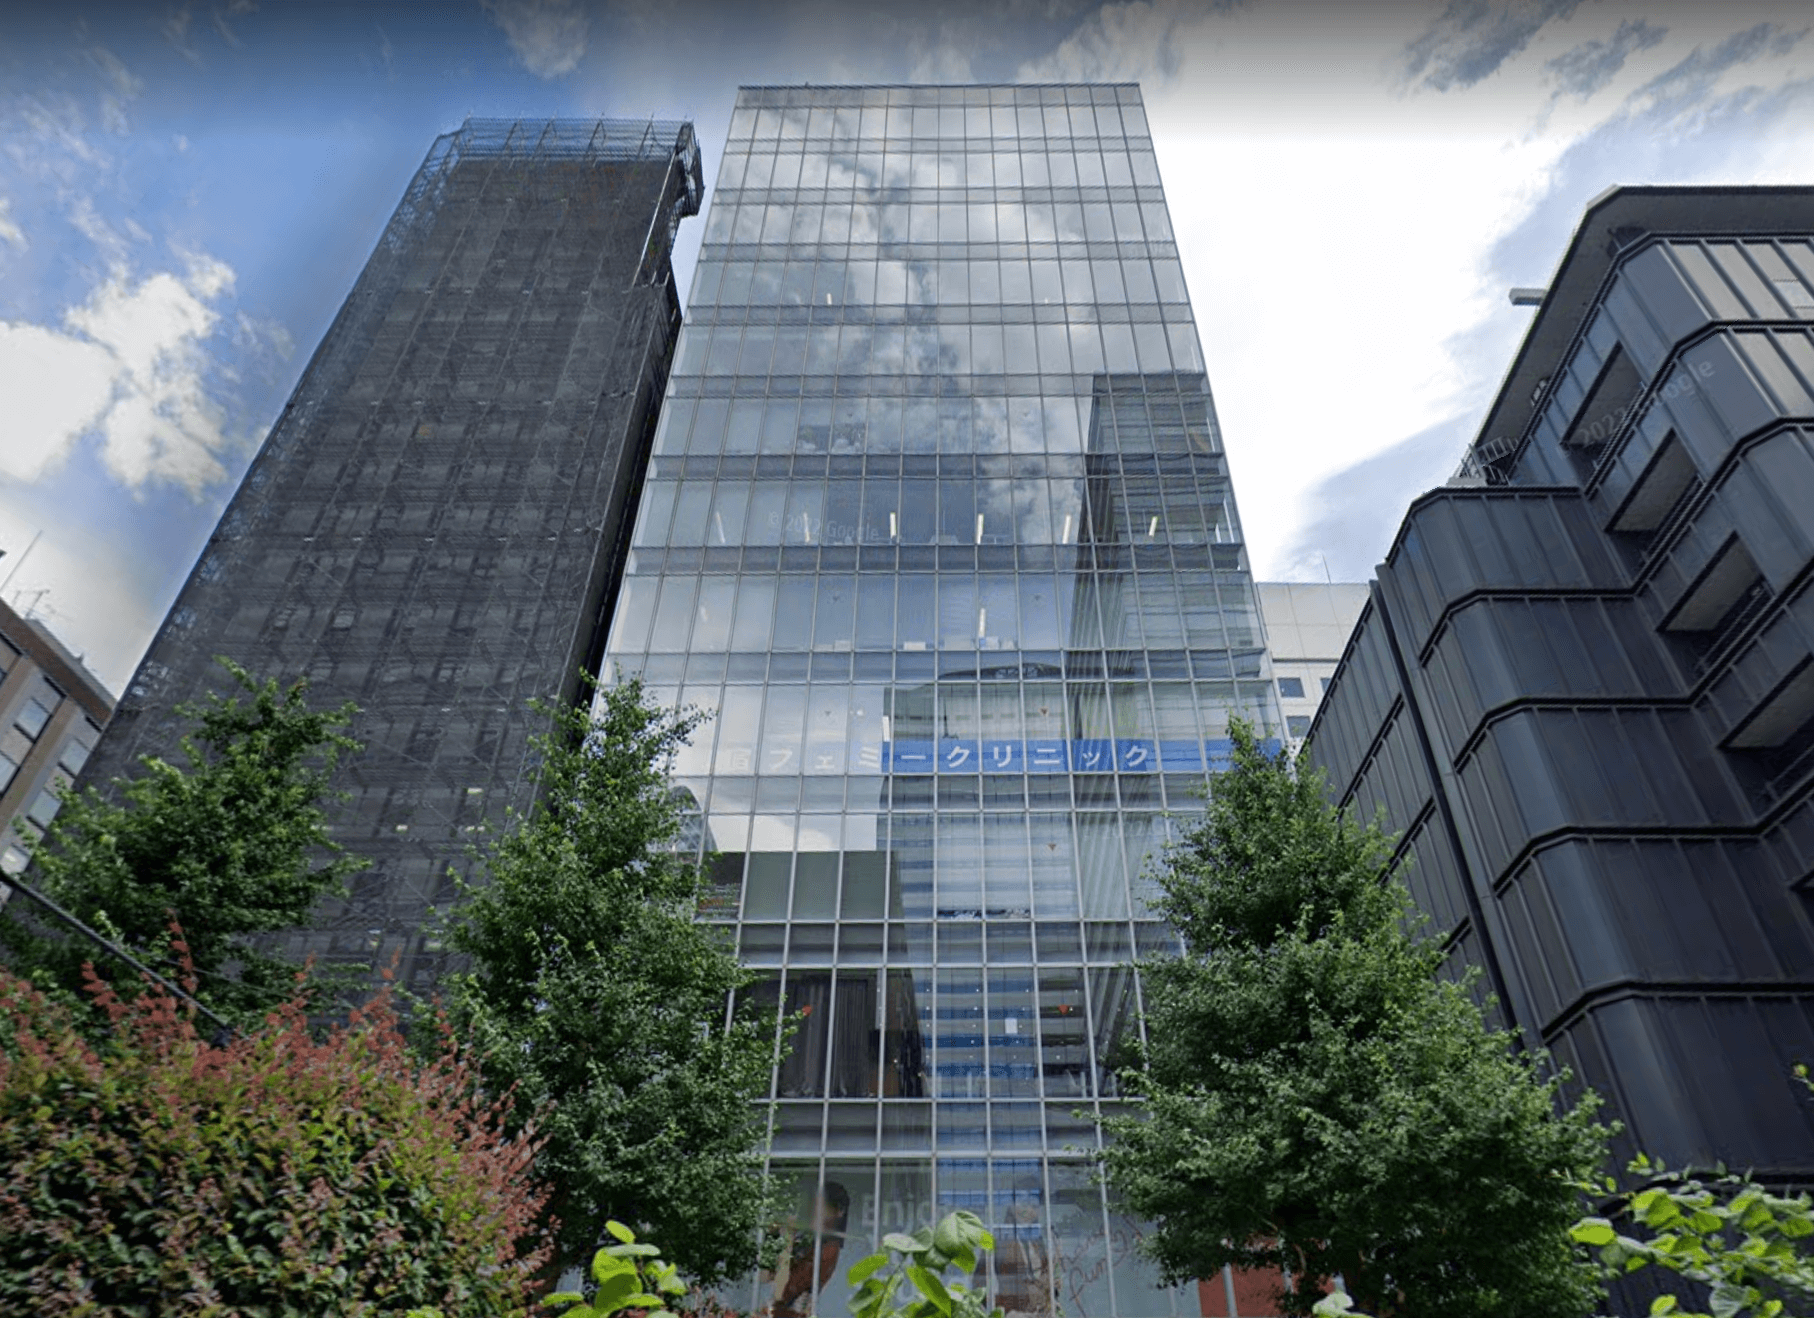 メガネスーパーのとなりのビル「VORT西新宿Ⅲ」(旧名称 グラフィオ西新宿ビル)の2F、3FがEYS音楽教室となります。